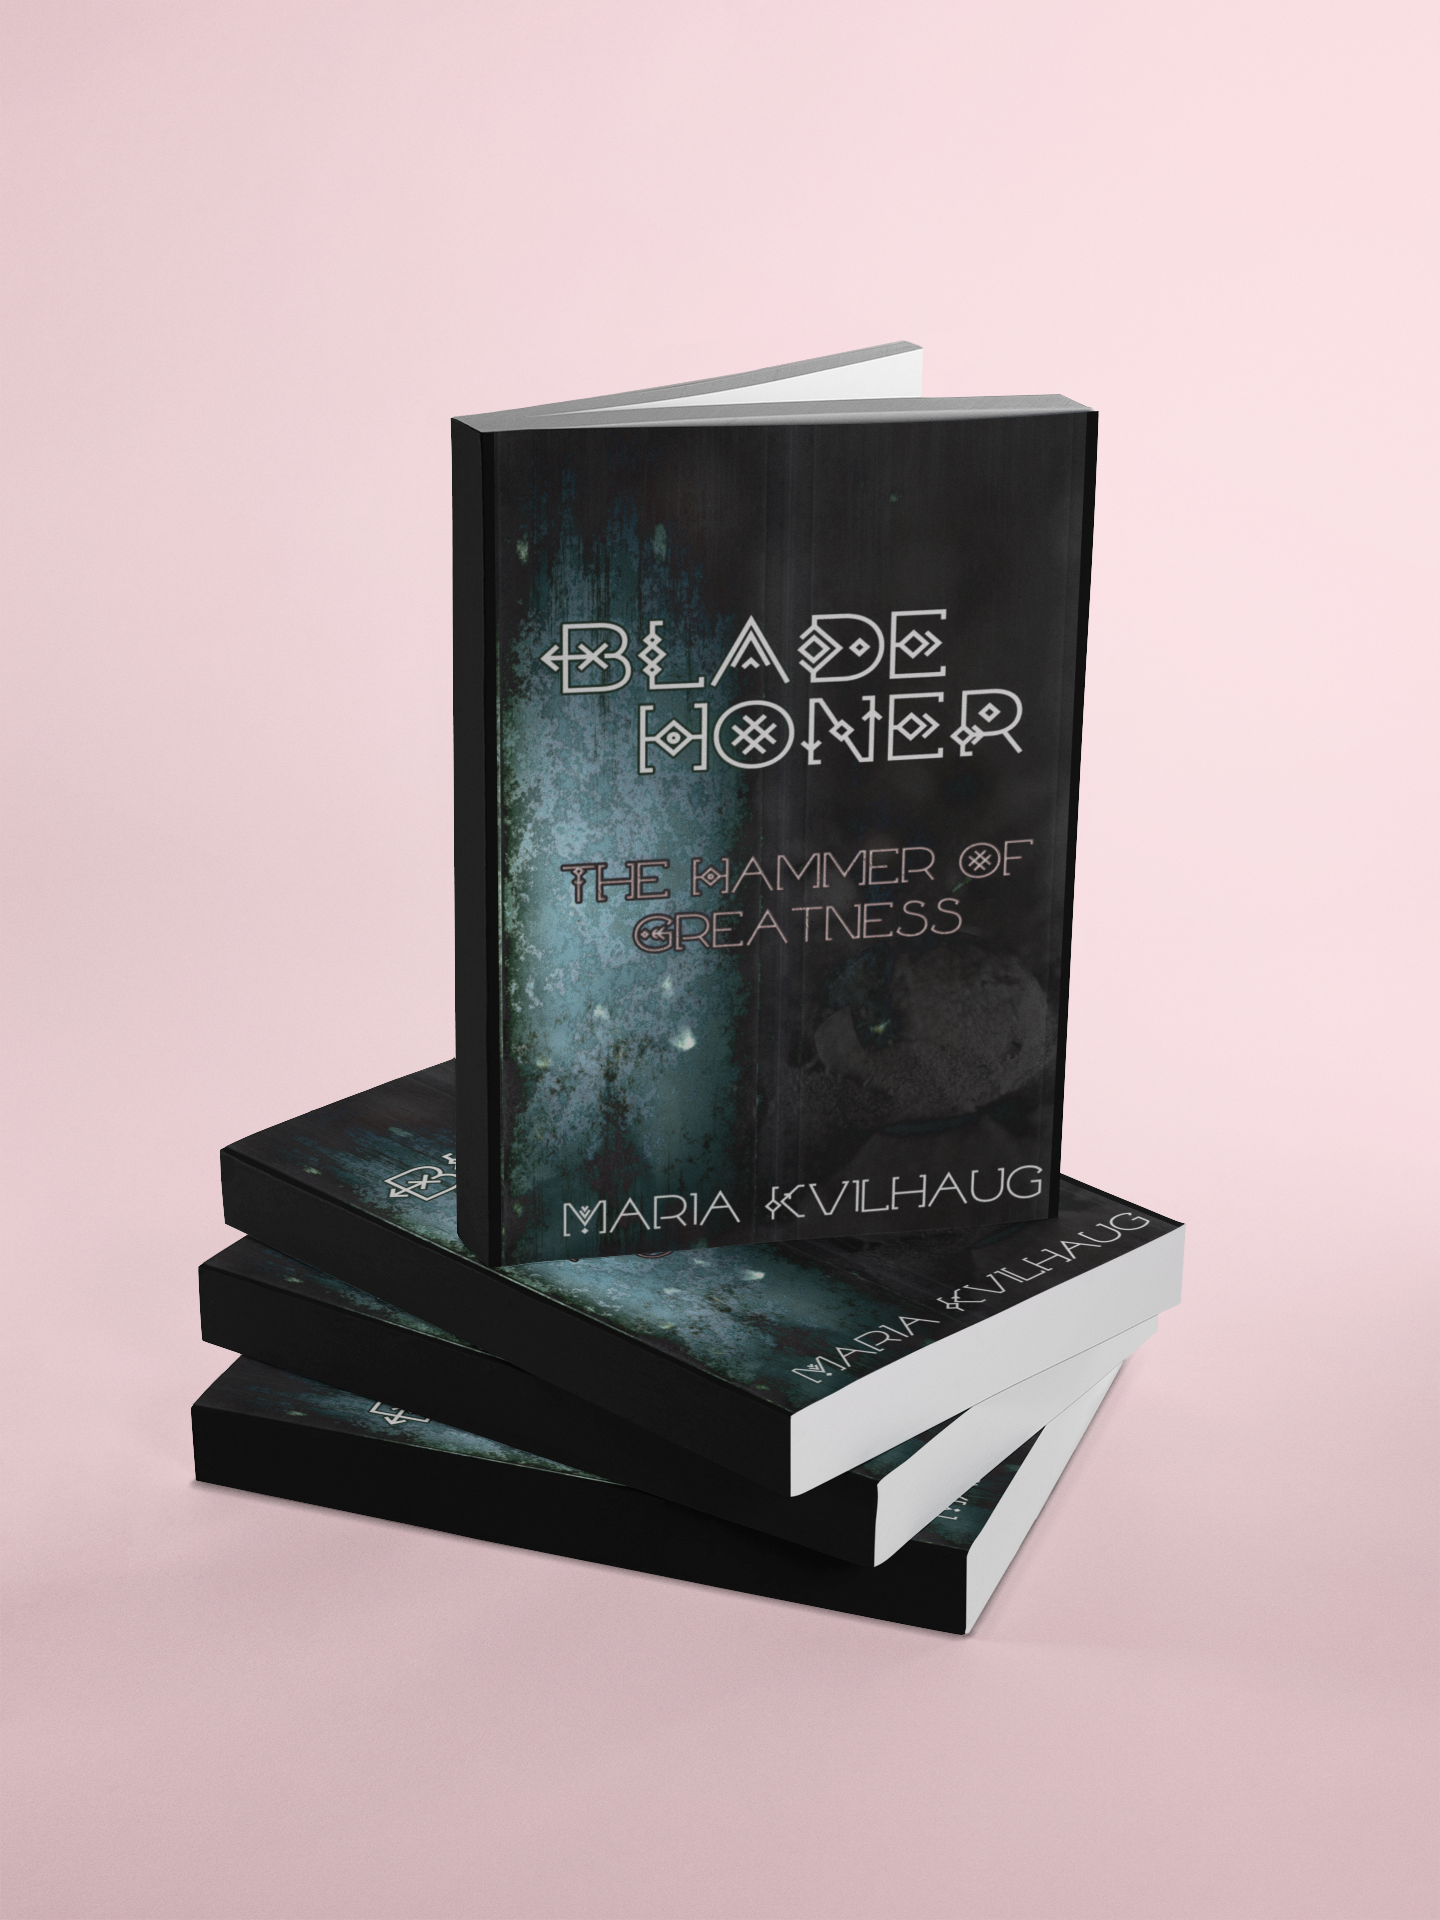 Blade Honer: Book 2, My Enemies Head